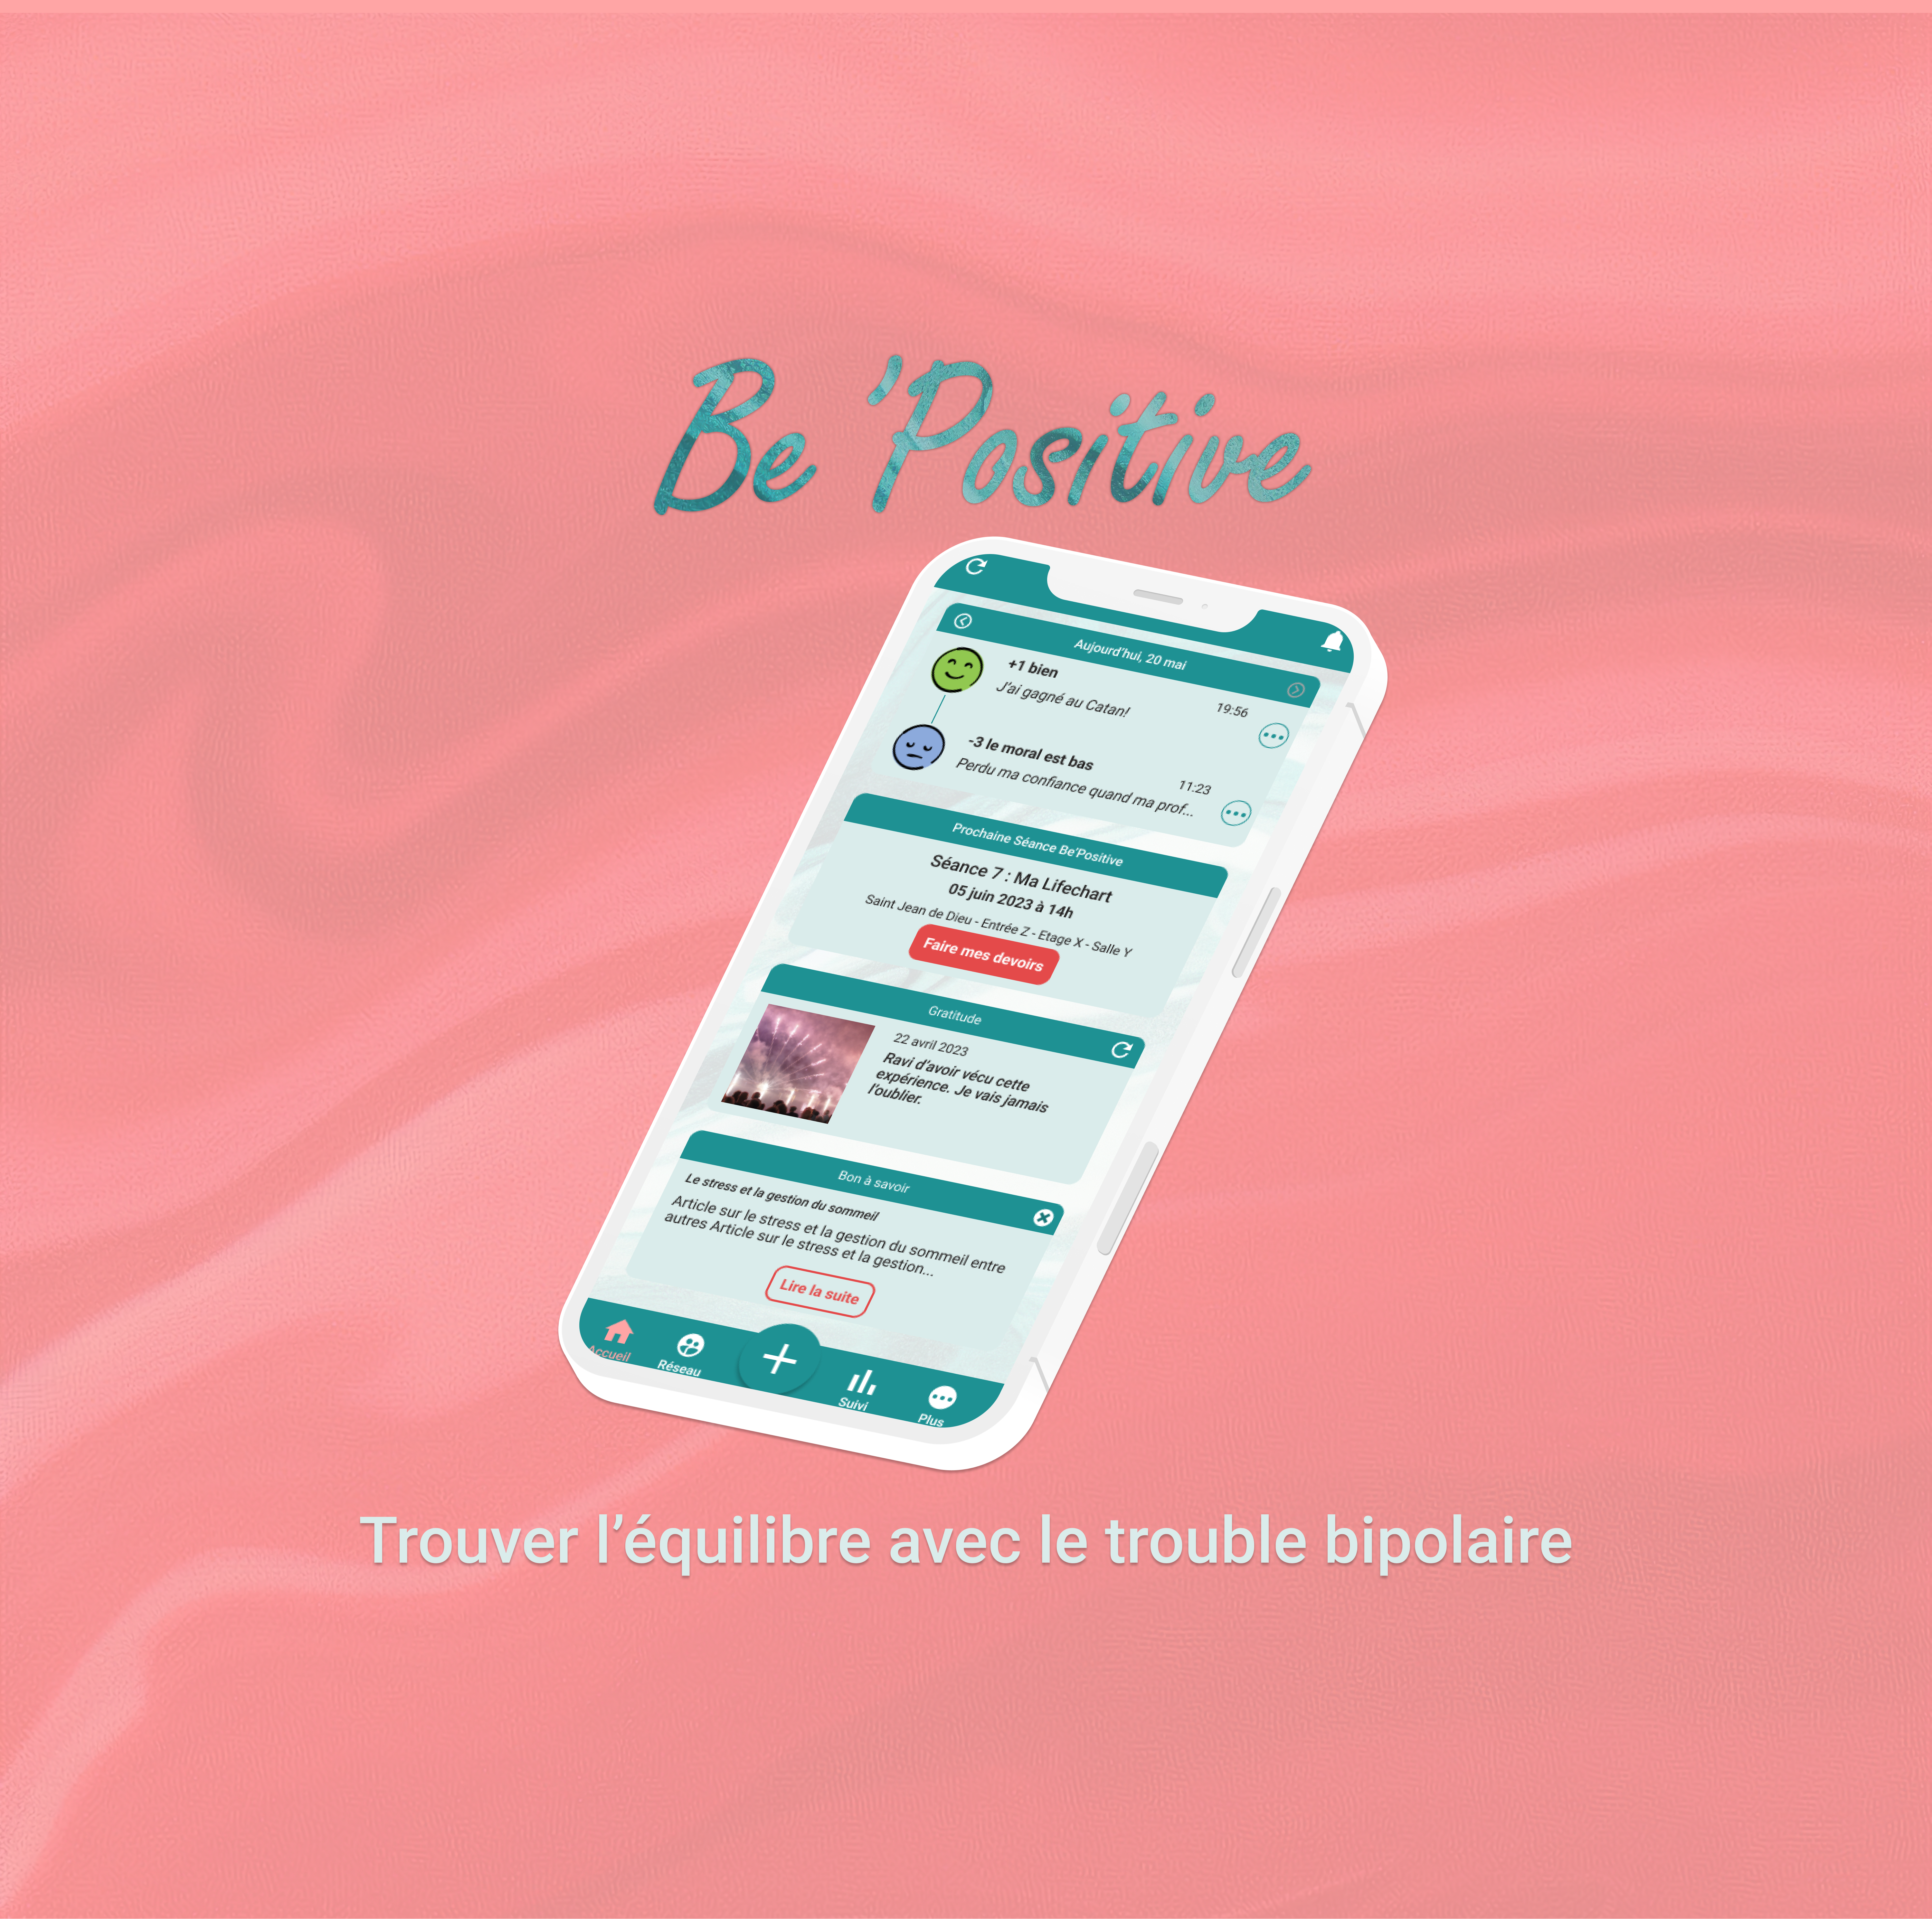 Testez une solution innovante en avant-première : l’application Be’Positive !